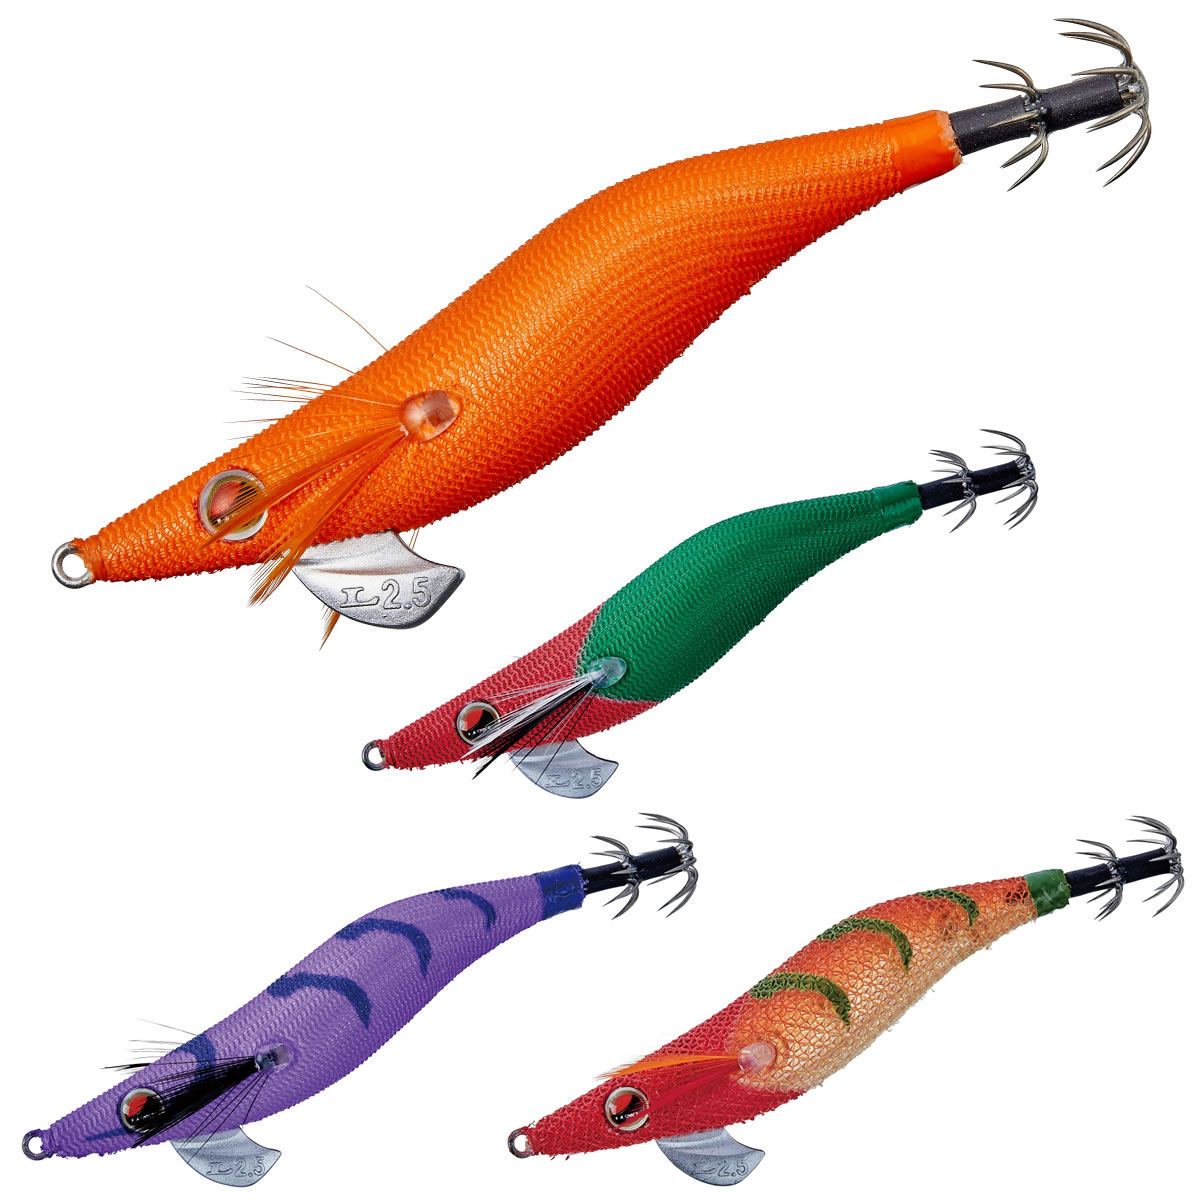 がまかつ スピードメタルエギドロッパー 2.5号 その2 (エギング エギ) - 釣り具の販売、通販なら、フィッシング遊-WEB本店 ダイワ／シマノ／ がまかつの釣具ならおまかせ